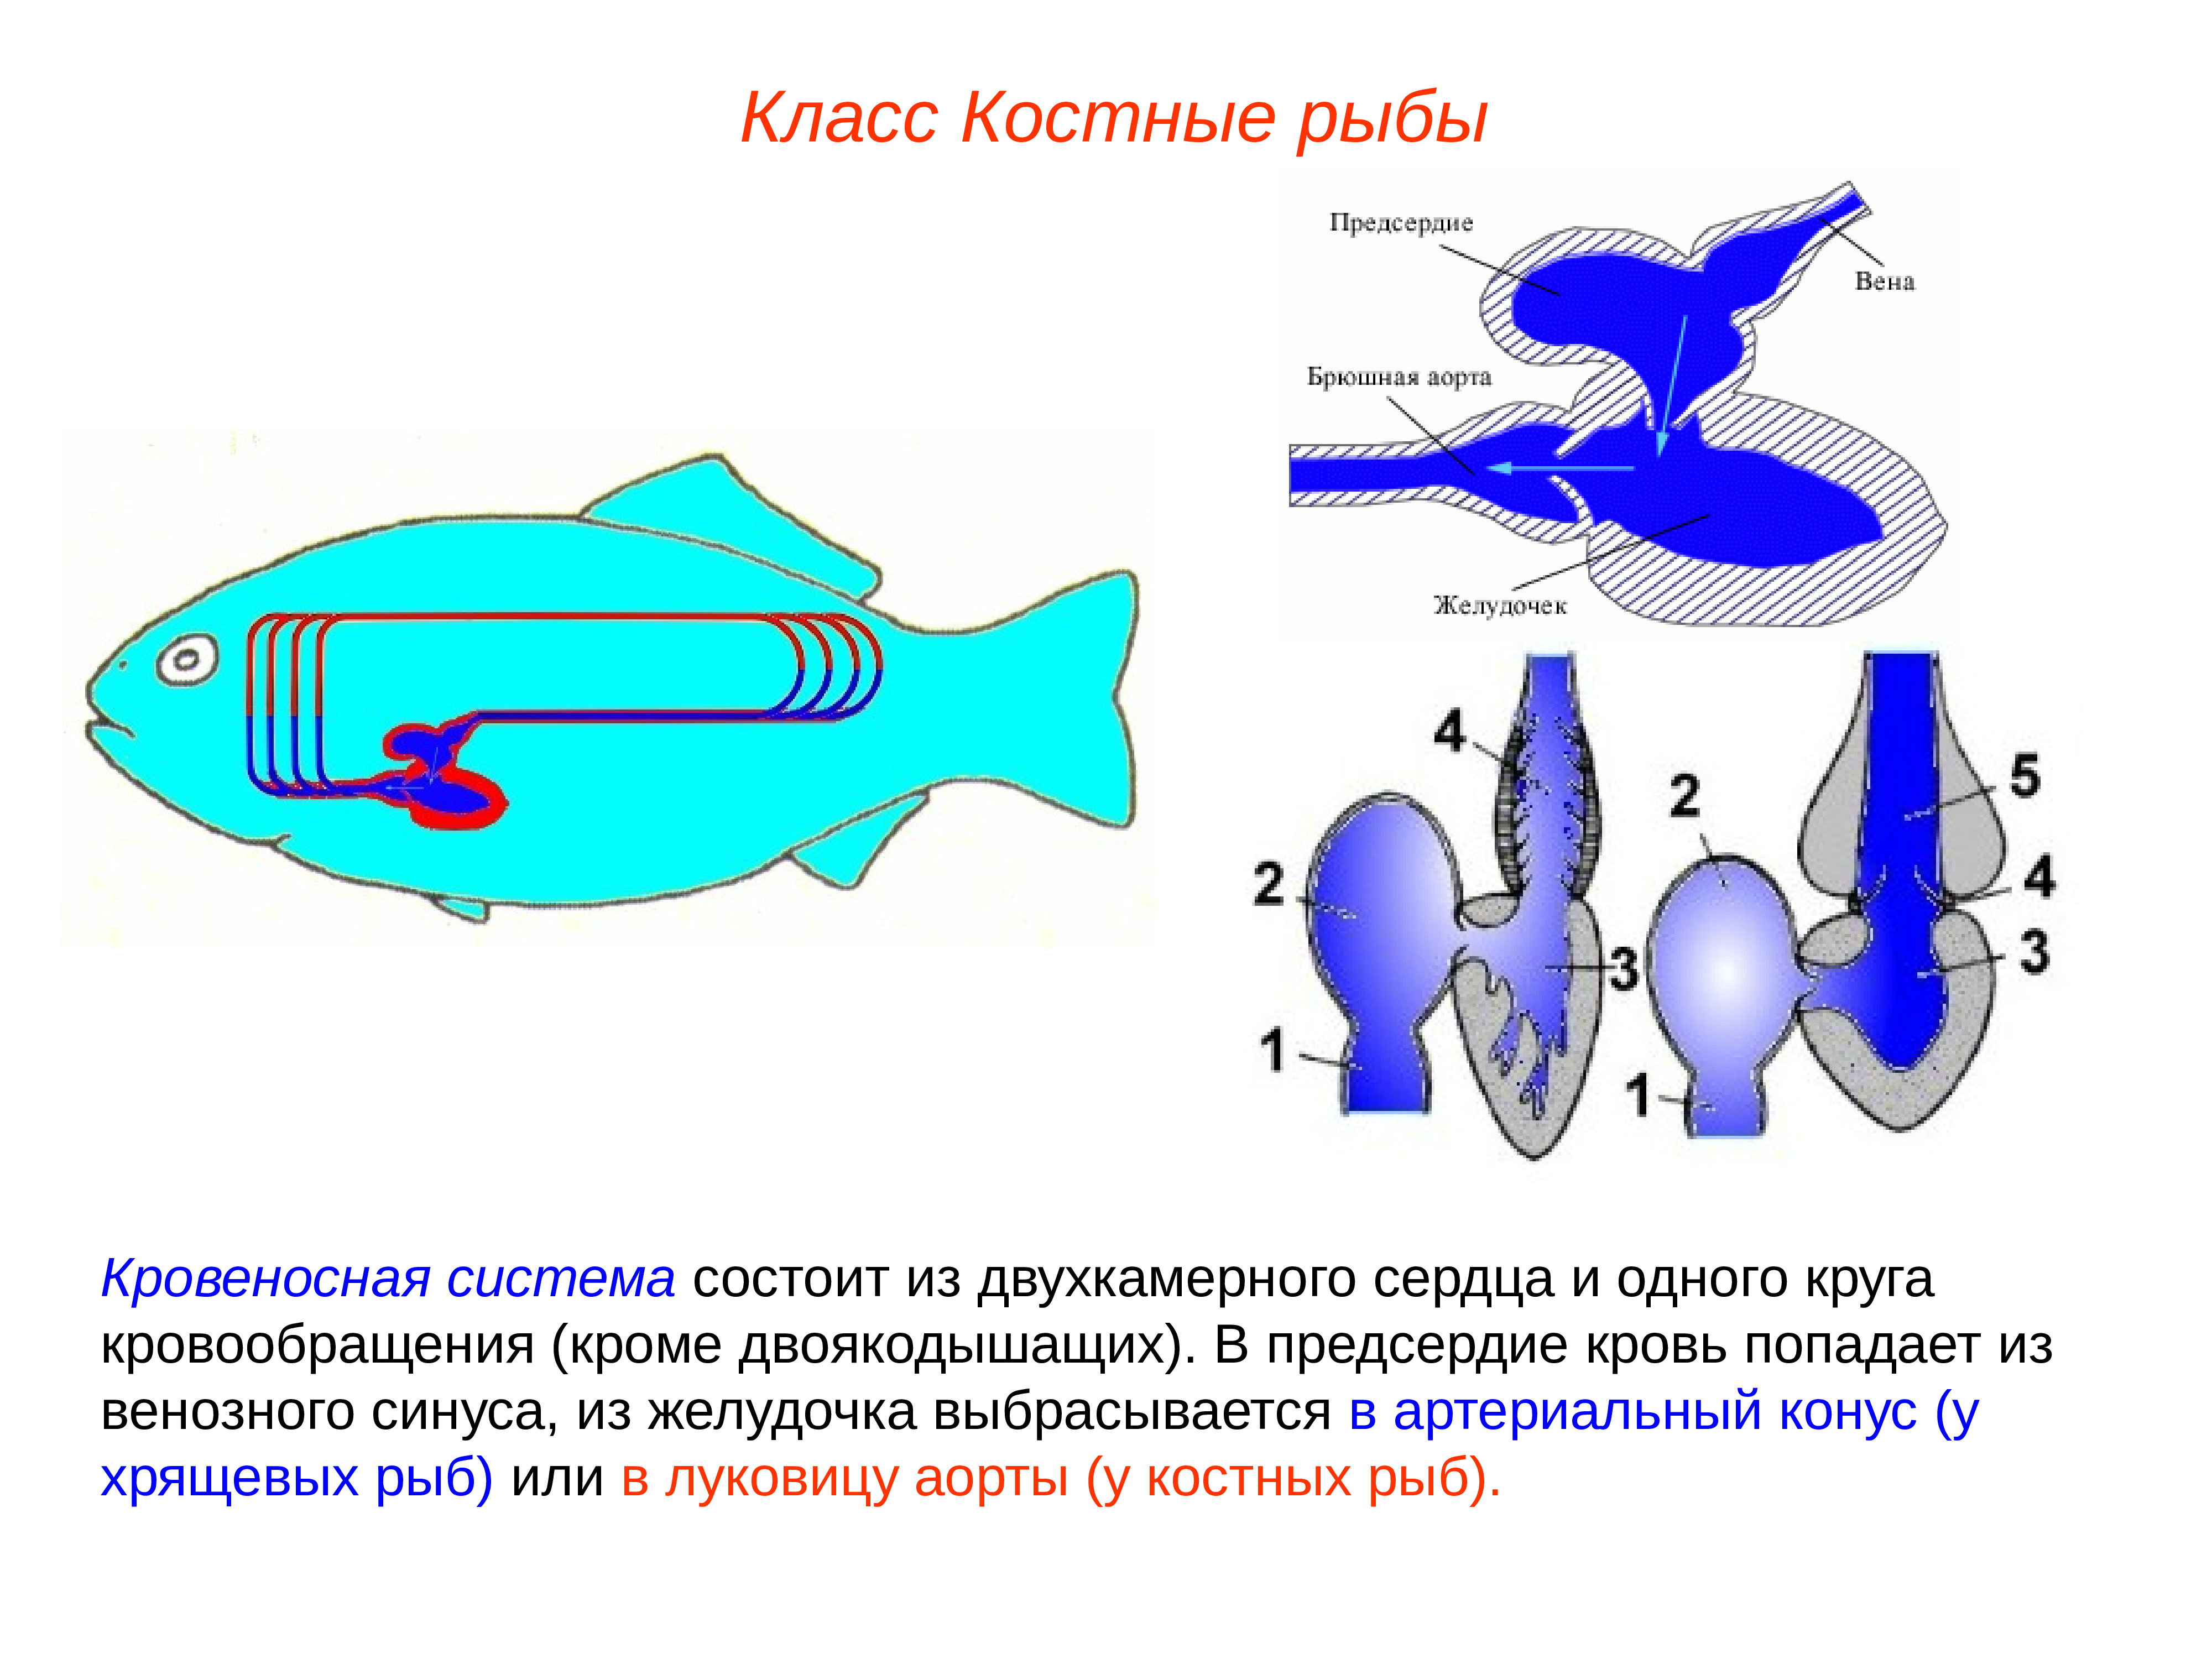 Костные рыбы круги кровообращения